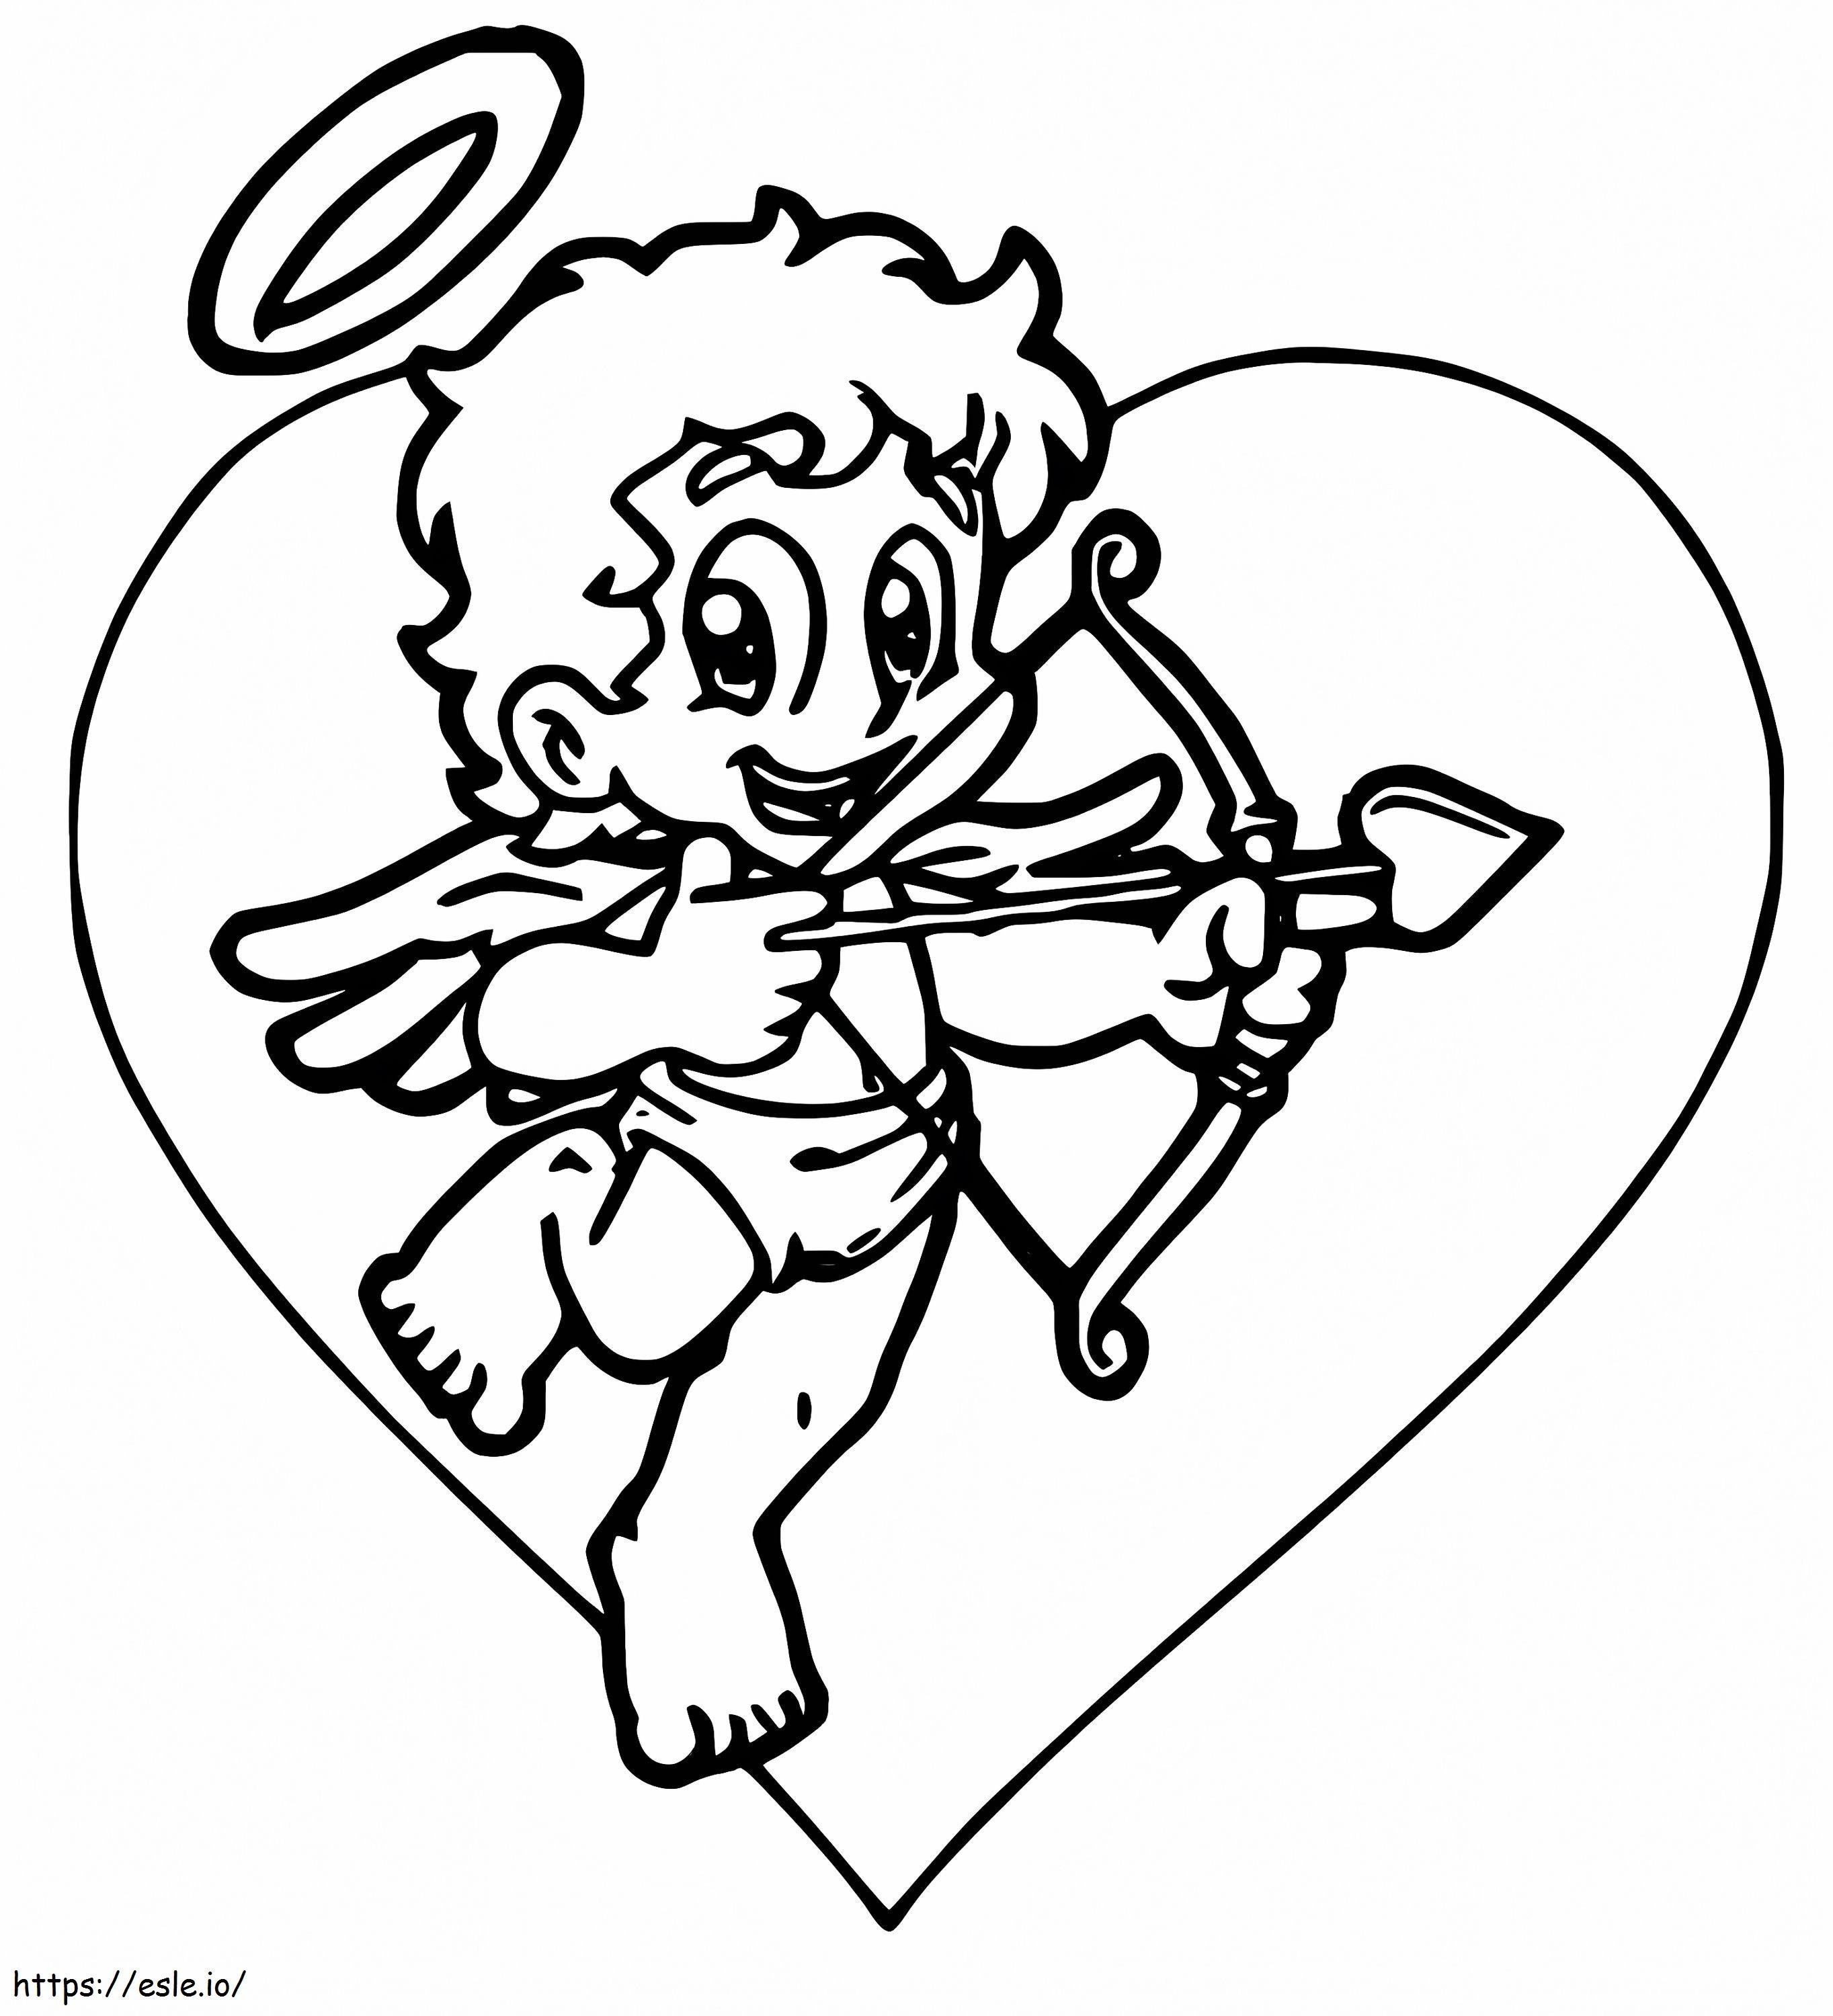 Cupidon Zâmbind de colorat